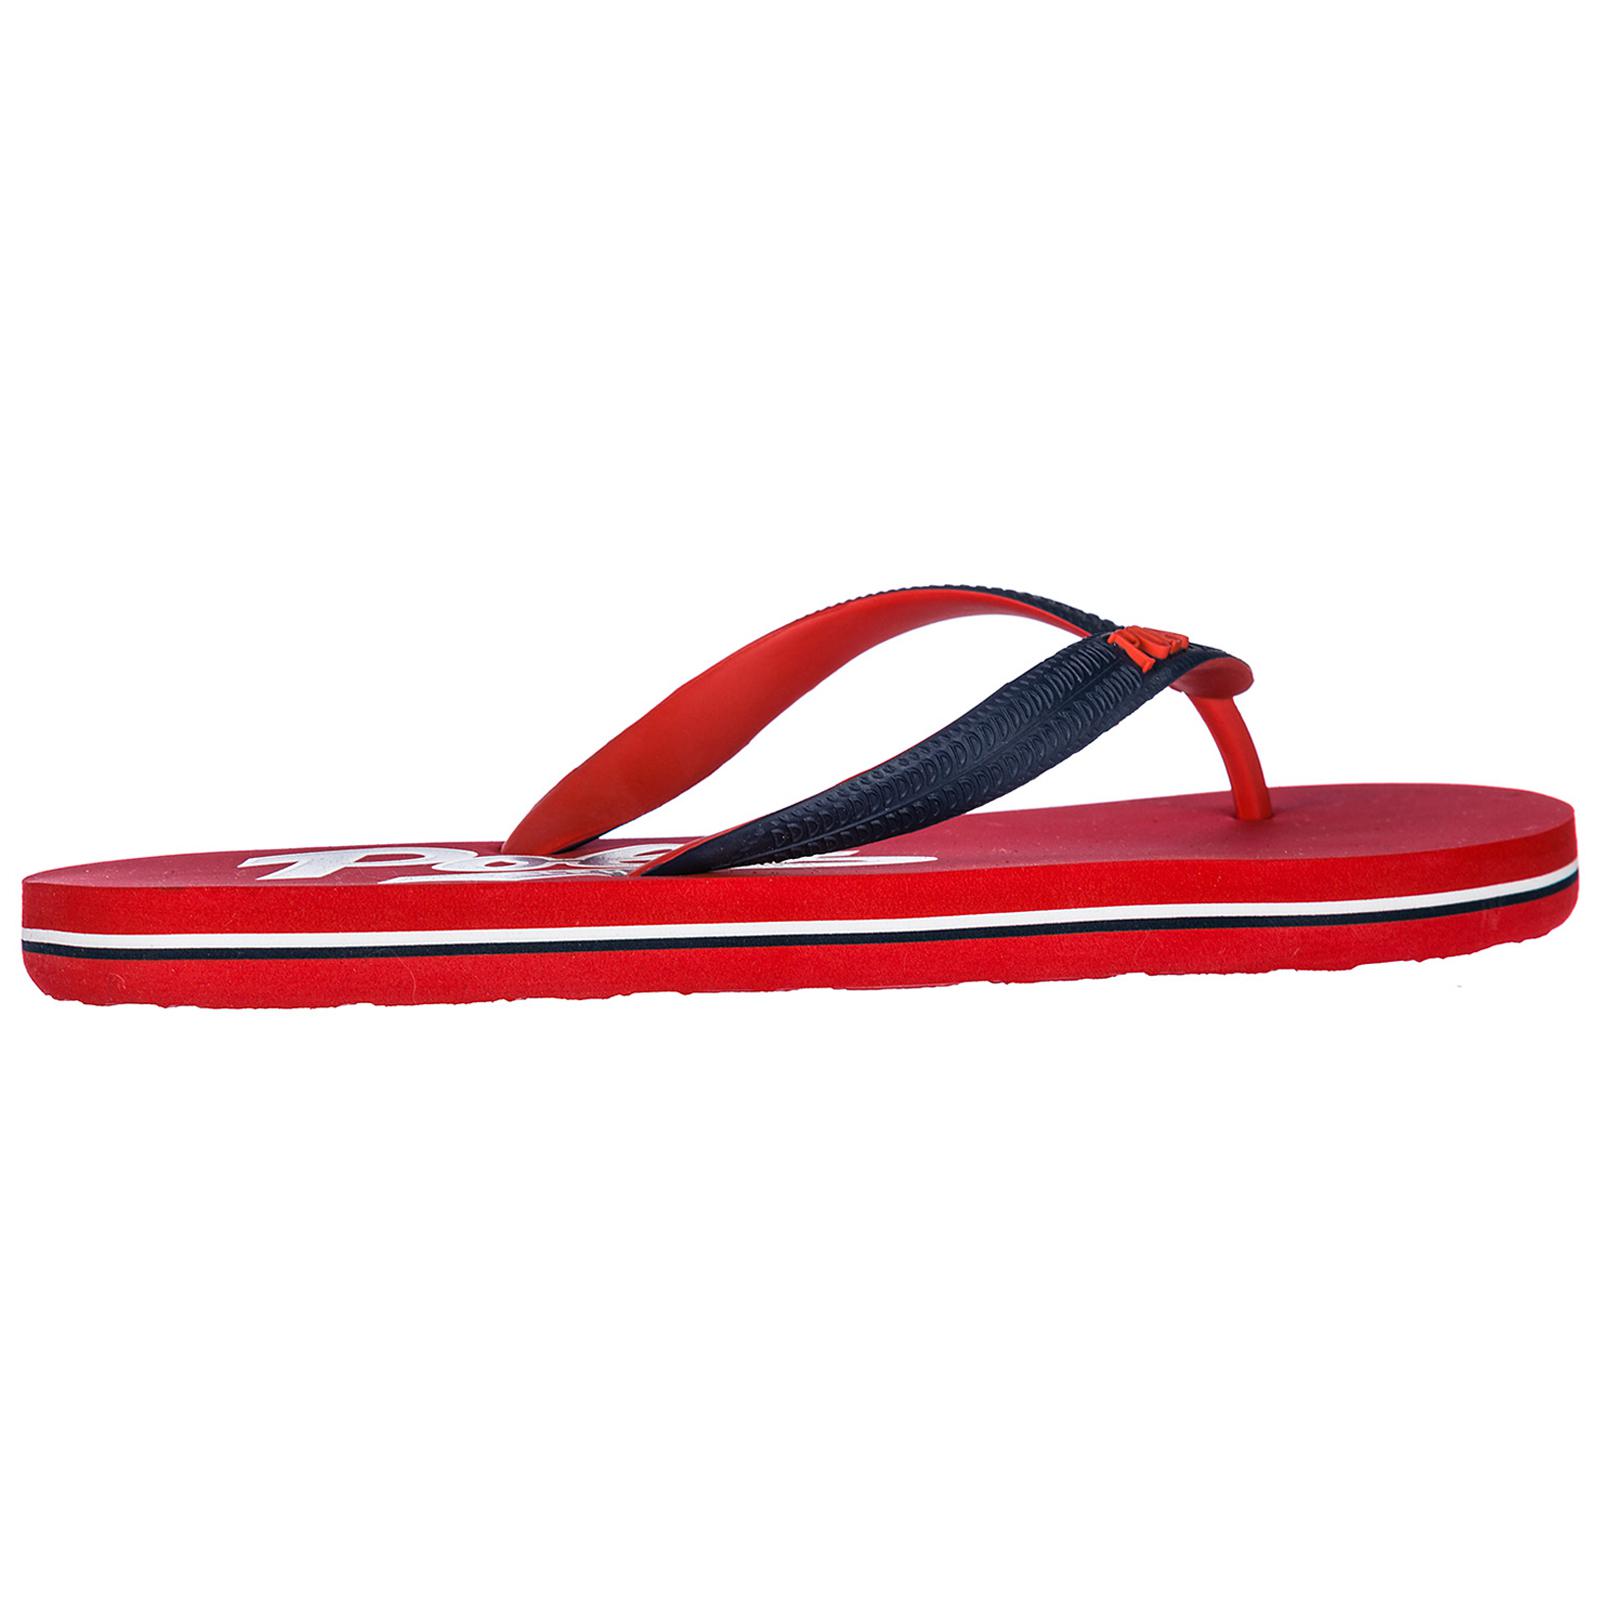 Polo Ralph Lauren Rubber Flip Flops Sandals in Red for Men - Lyst